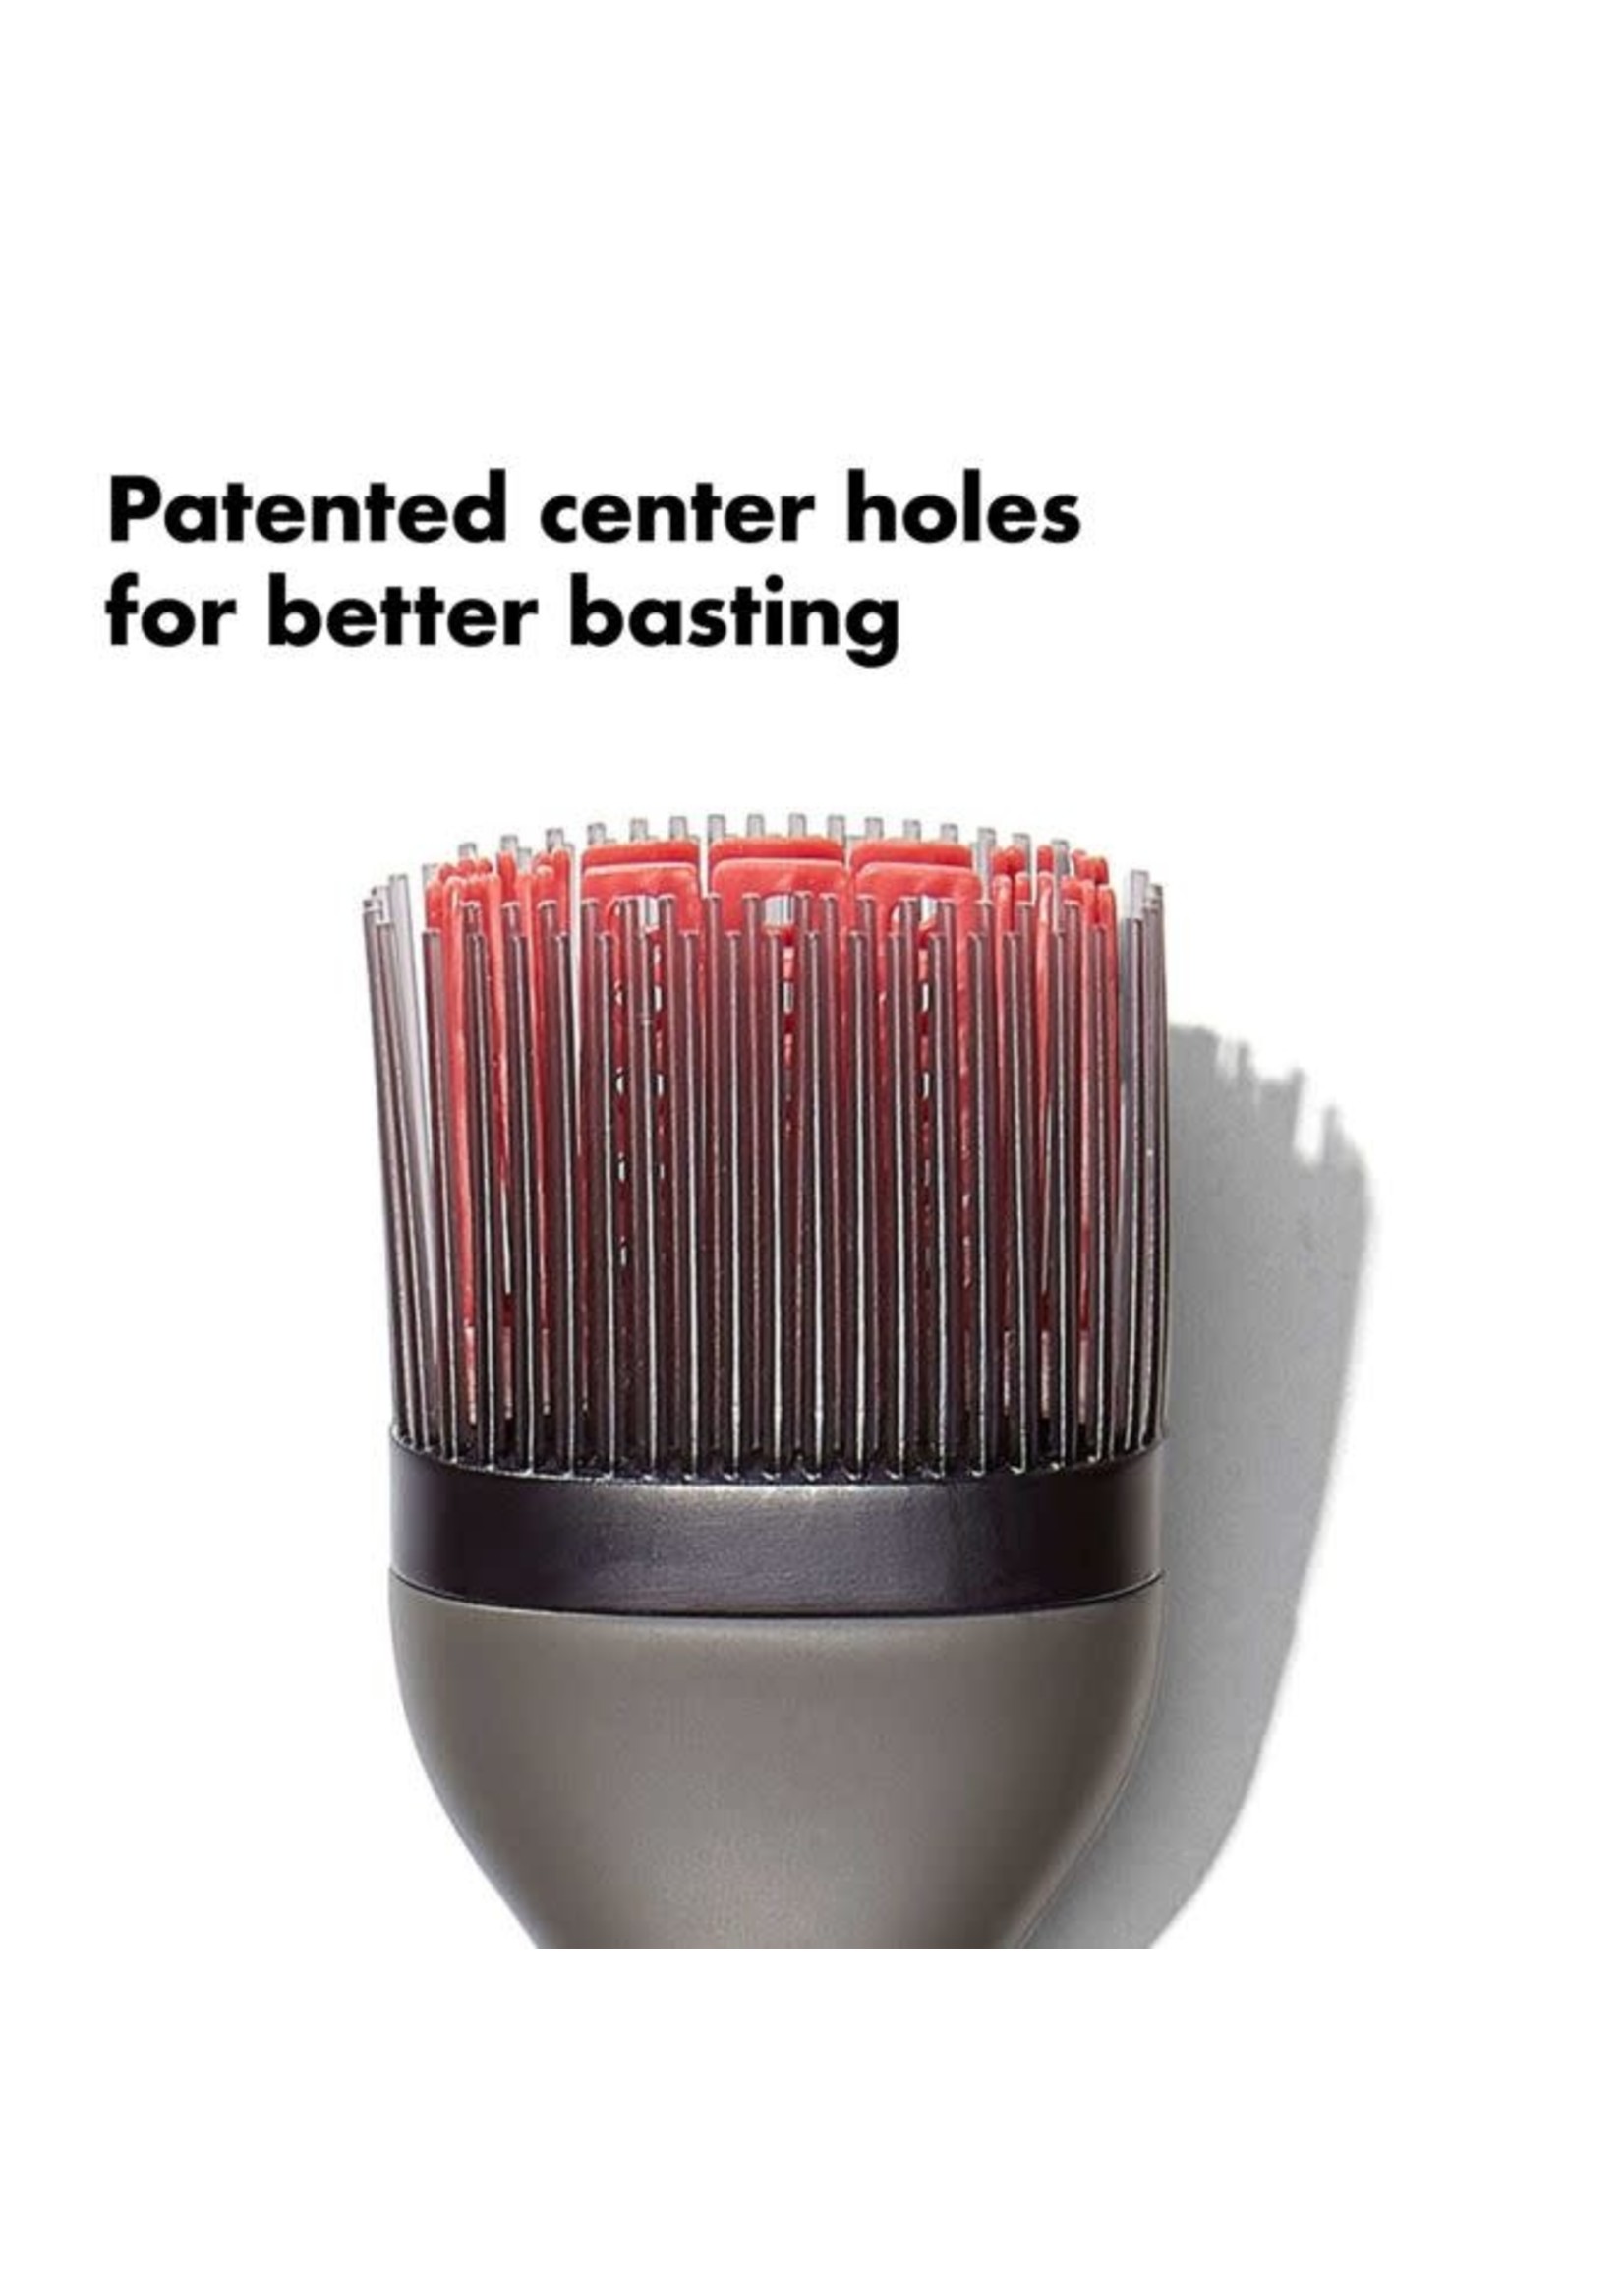 OXO Grilling Basting Brush